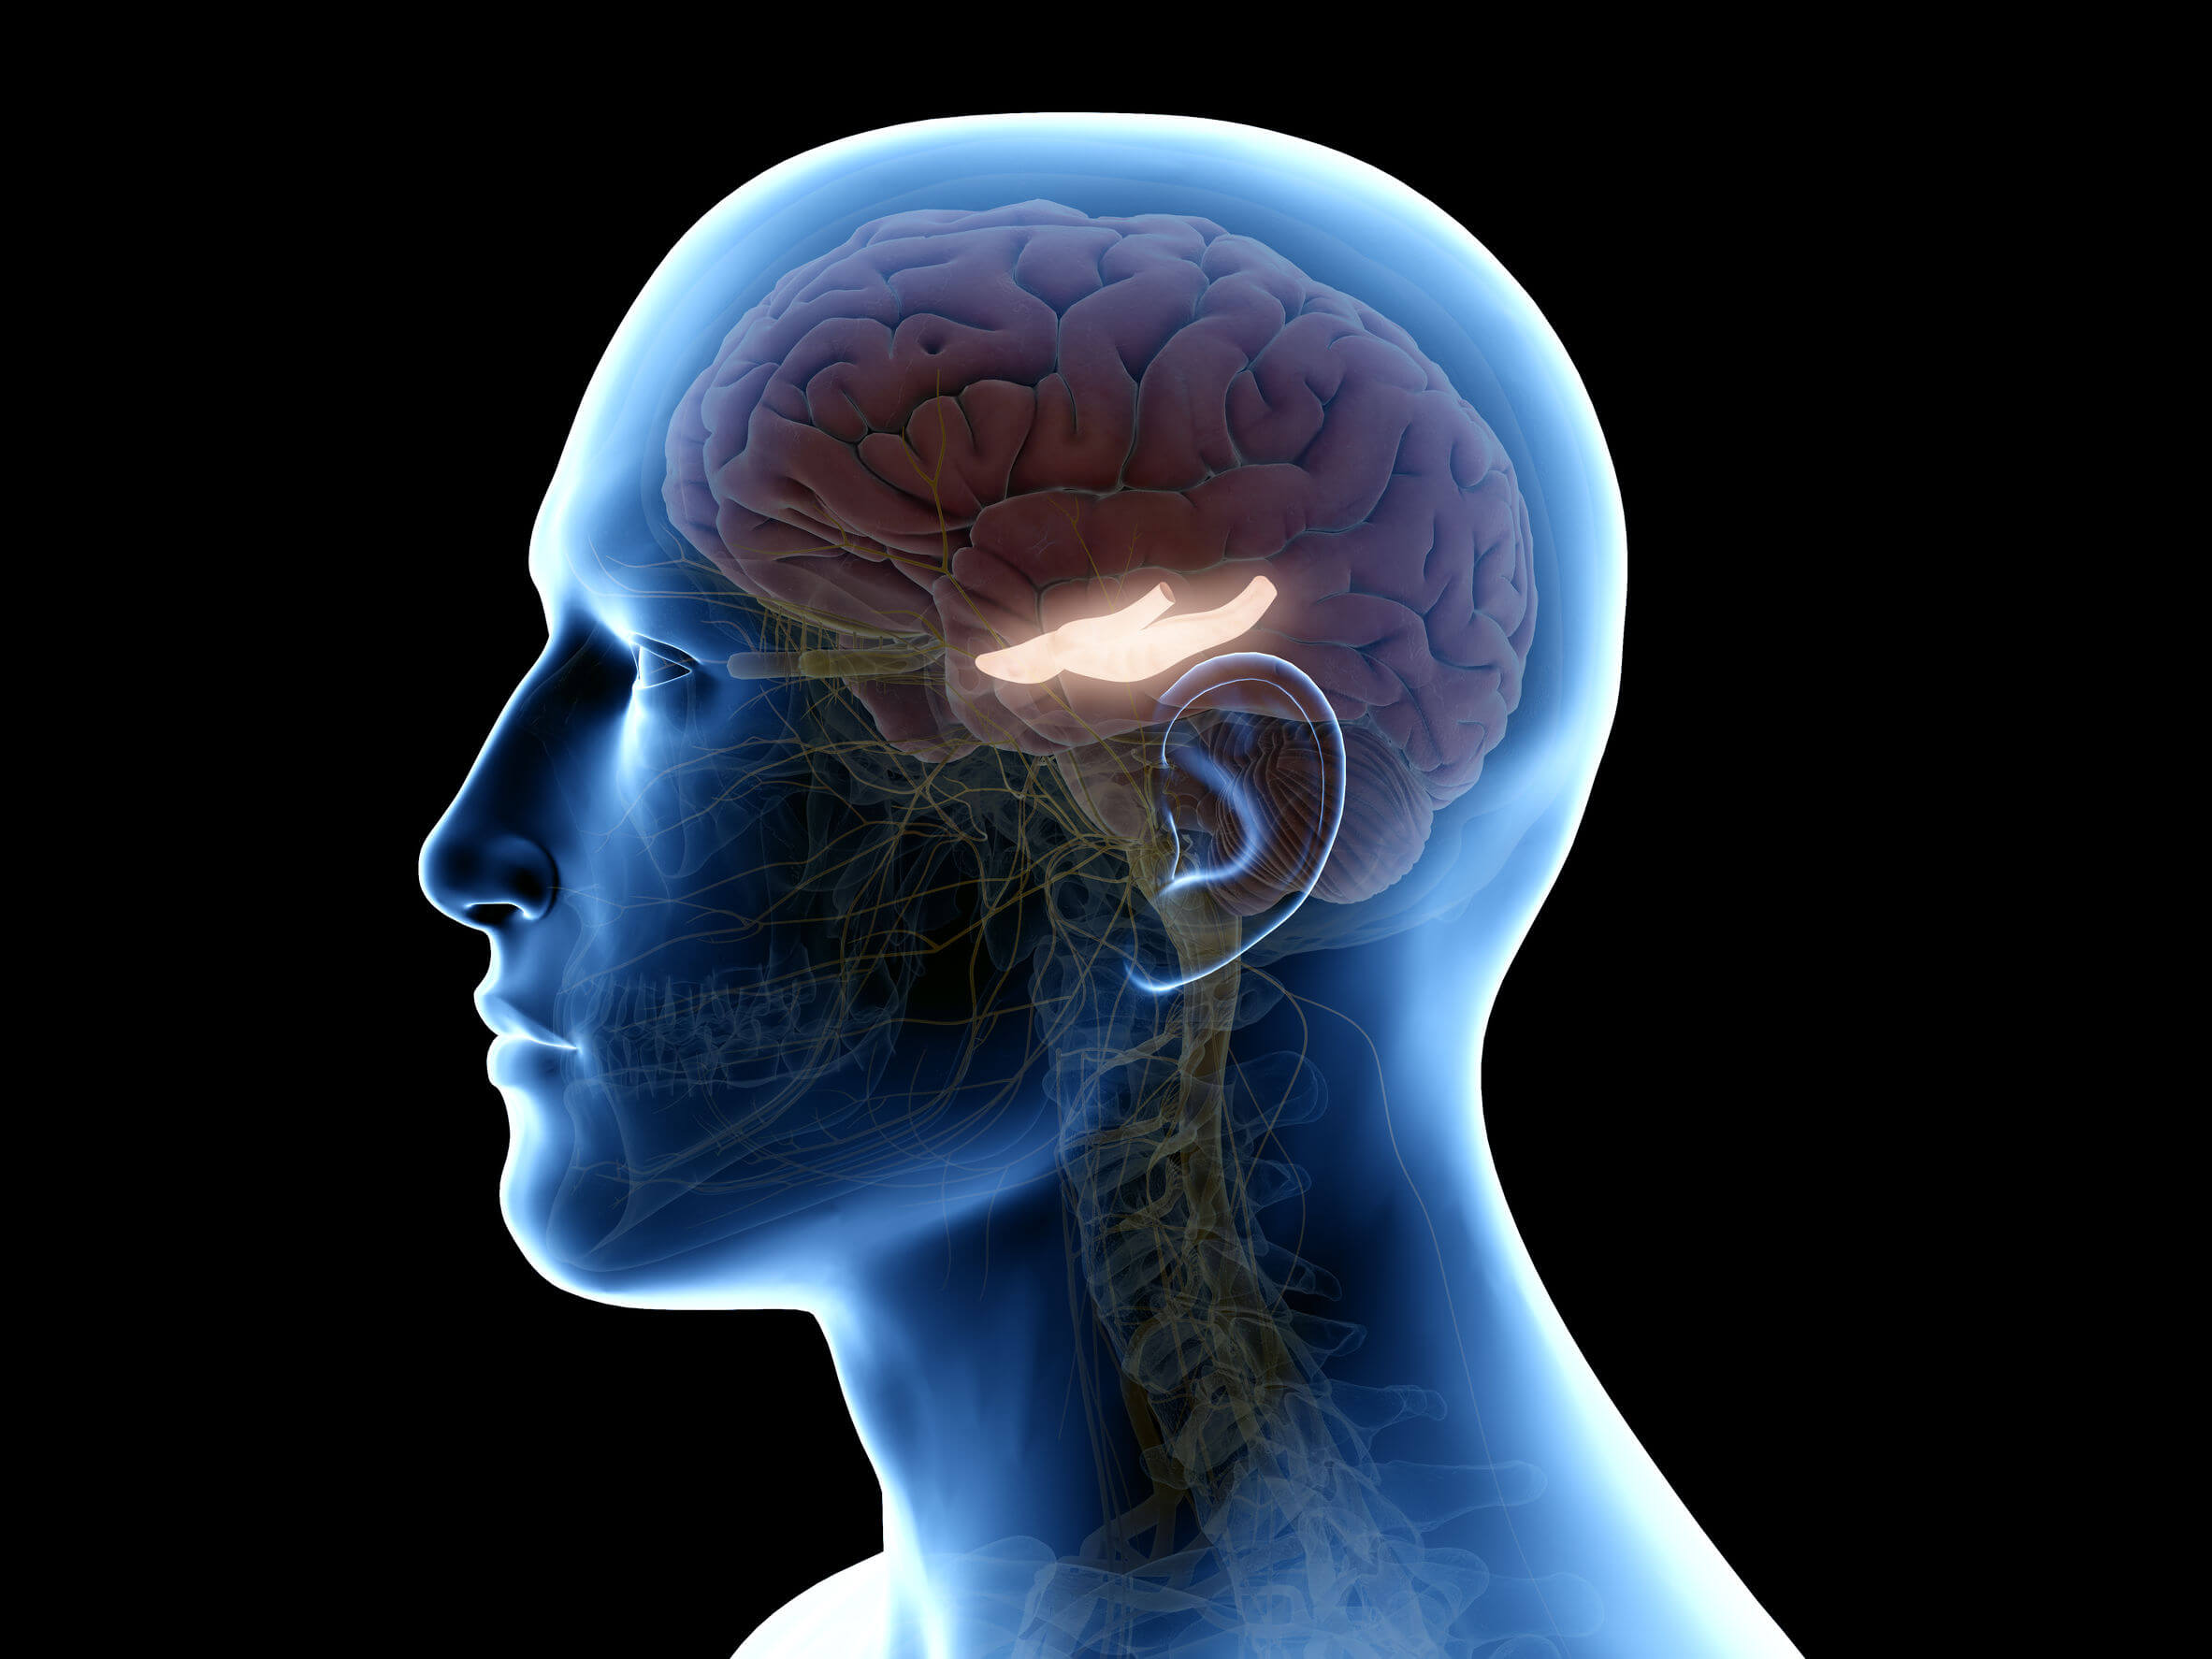 L'hippocampe est situé dans la partie interne du cerveau.